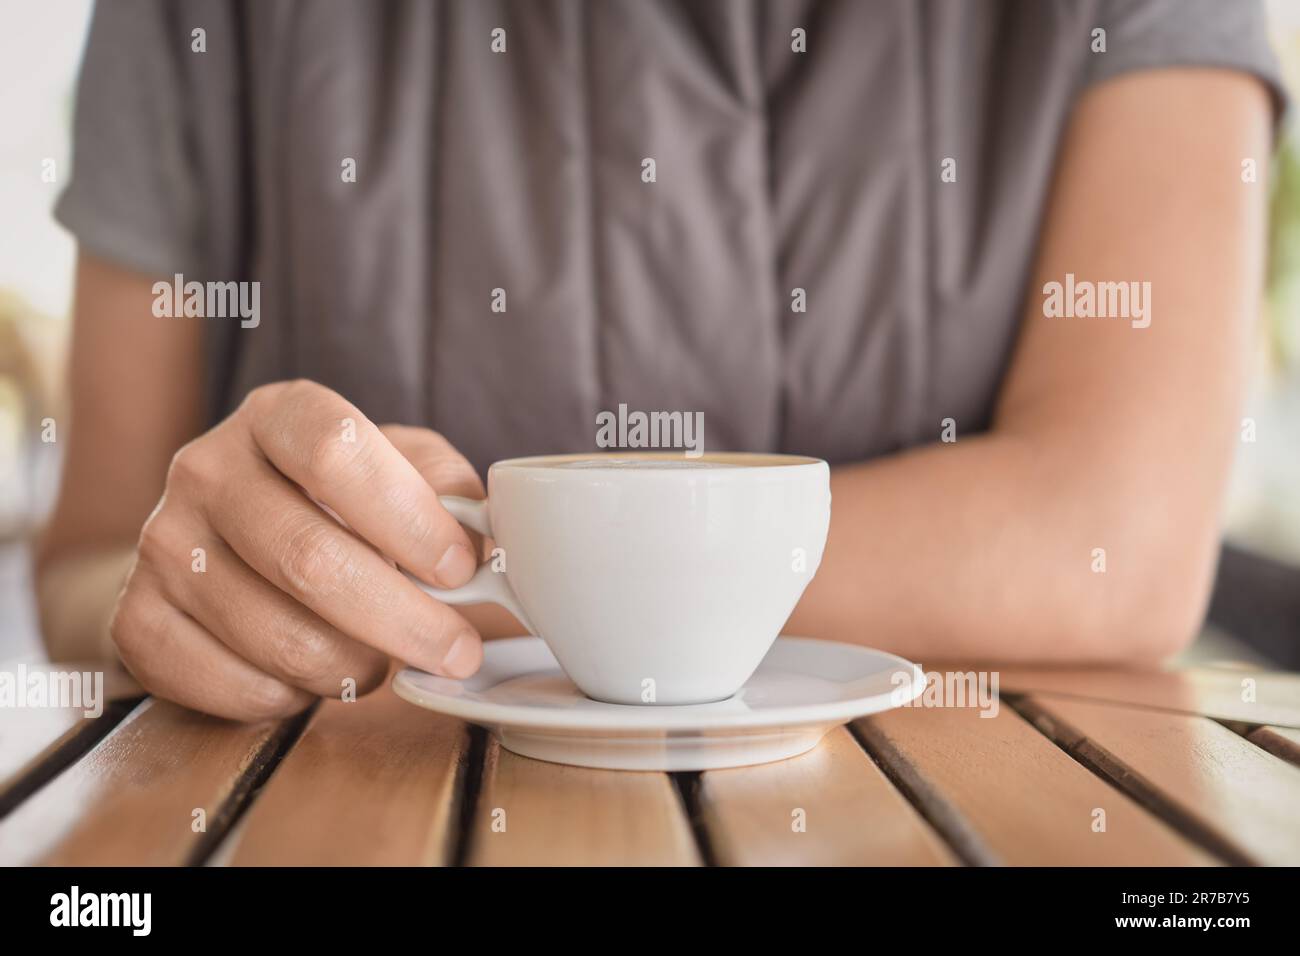 Nahaufnahme einer Tasse Cappuccino oder heißes Getränk und die Hände einer jungen Frau, die während einer Pause Kaffee trinkt. Selektive Fokussierung auf Finger, Idee für Backg Stockfoto